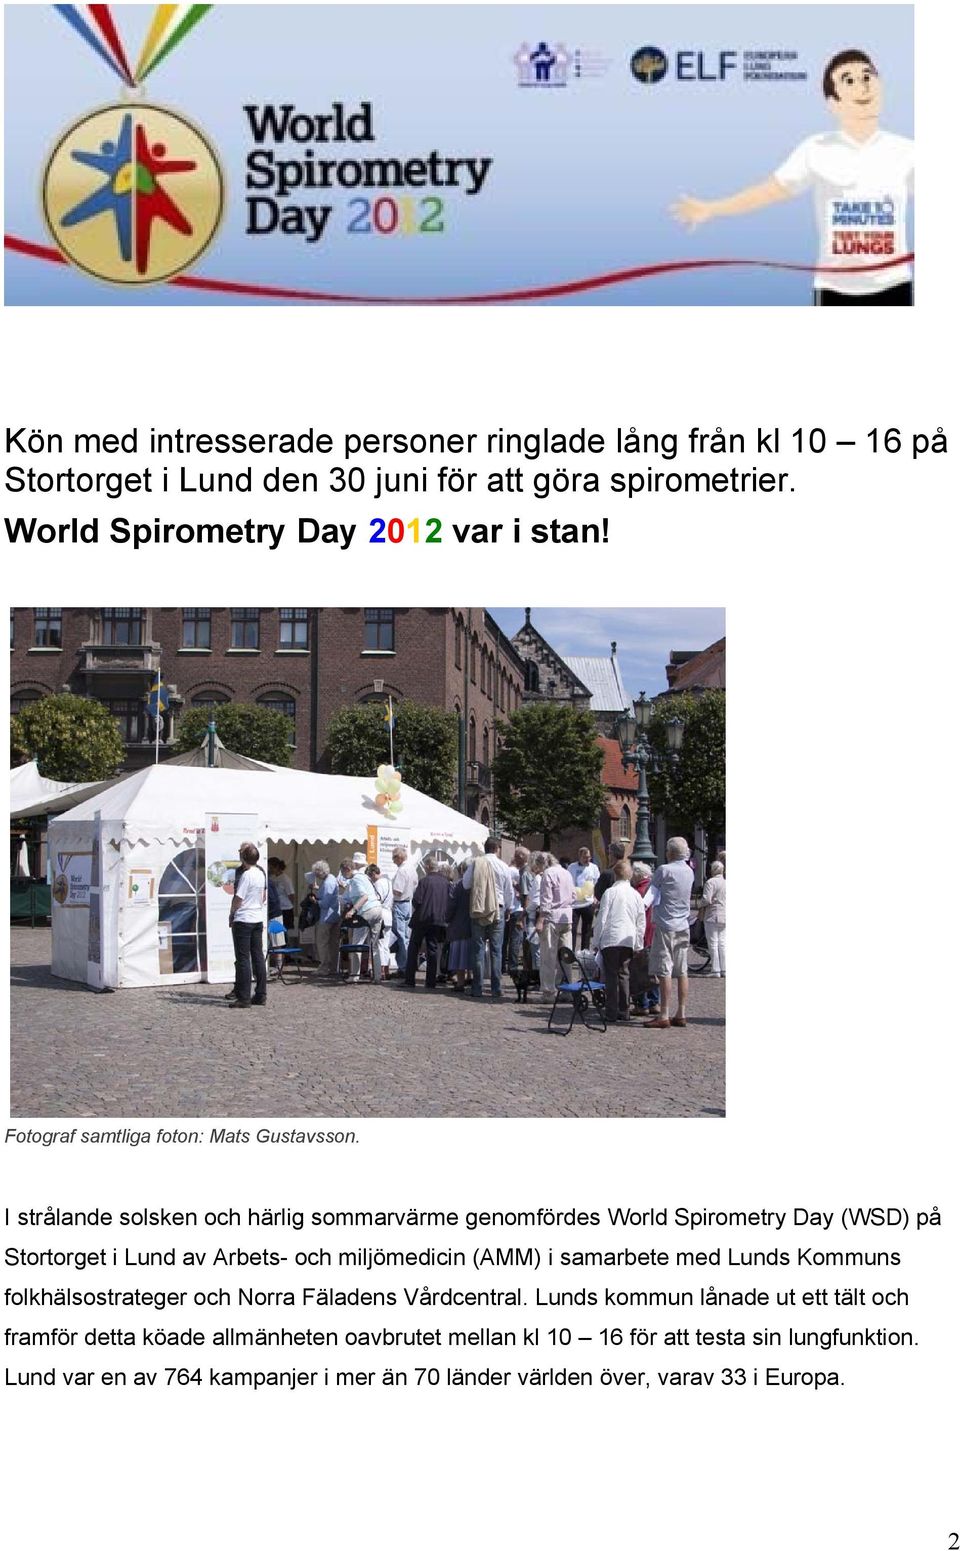 I strålande solsken och härlig sommarvärme genomfördes World Spirometry Day (WSD) på Stortorget i Lund av Arbets- och miljömedicin (AMM) i samarbete med